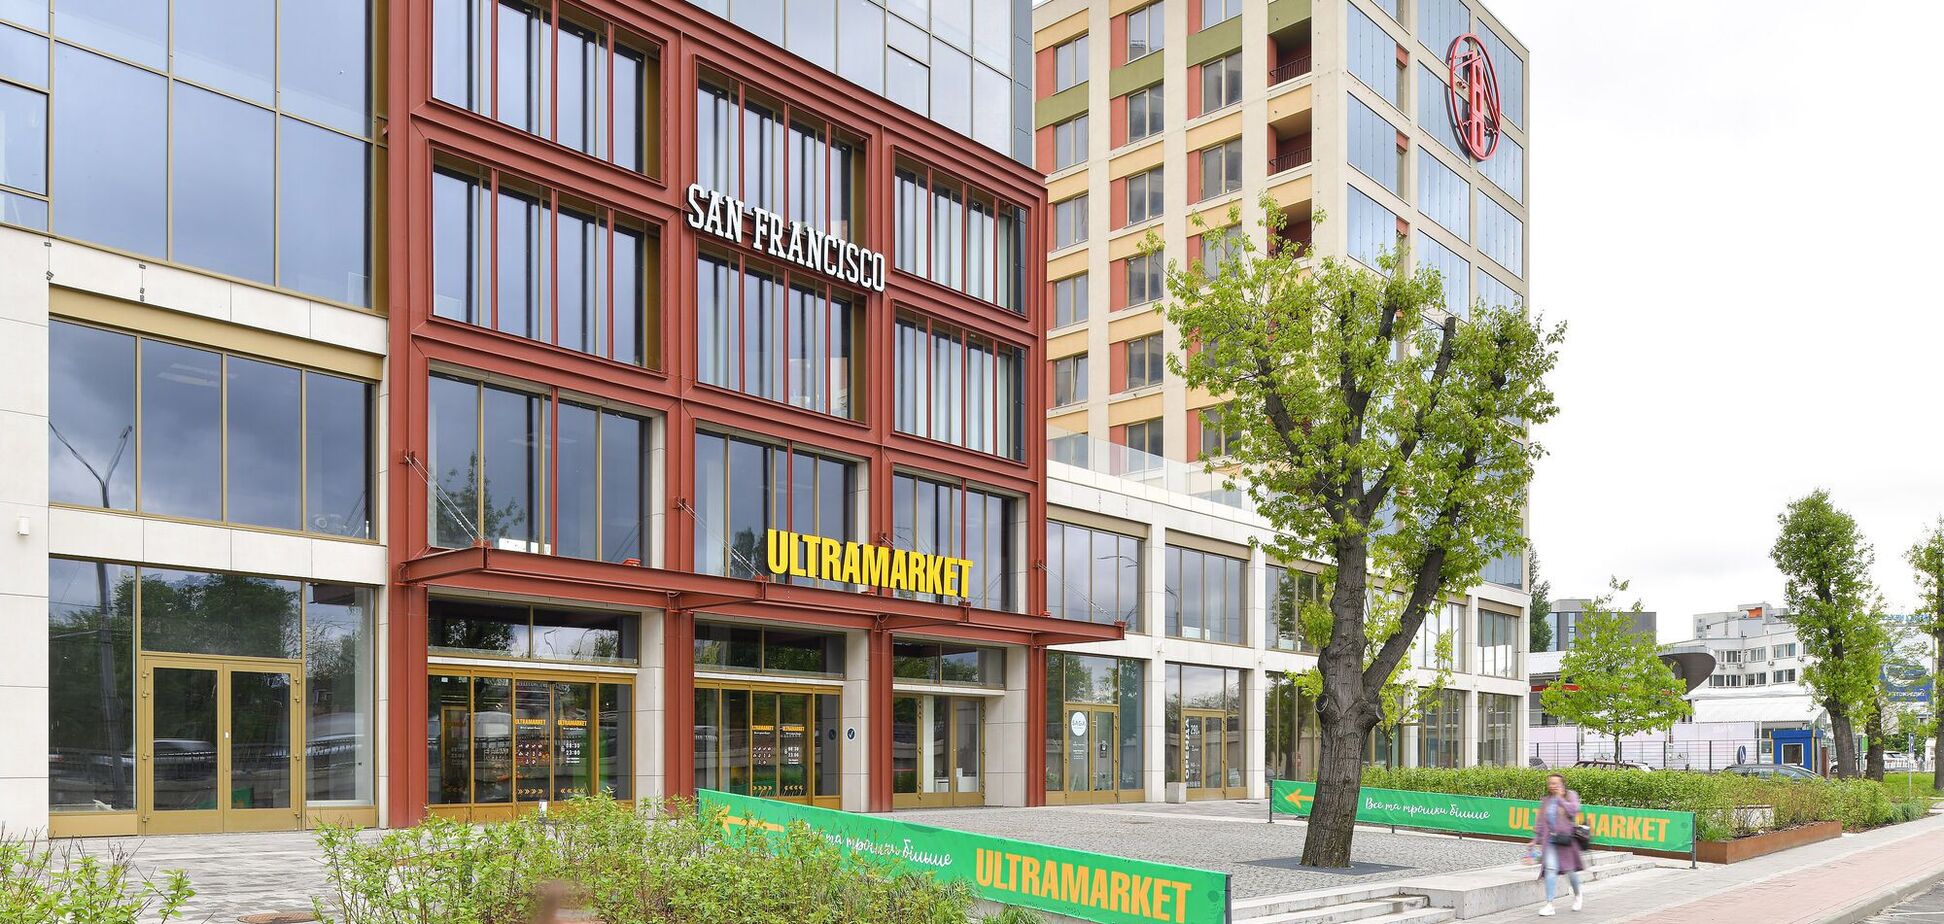 Сеть Ultramarket открыла первый магазин в ЖК San Francisco Creative House